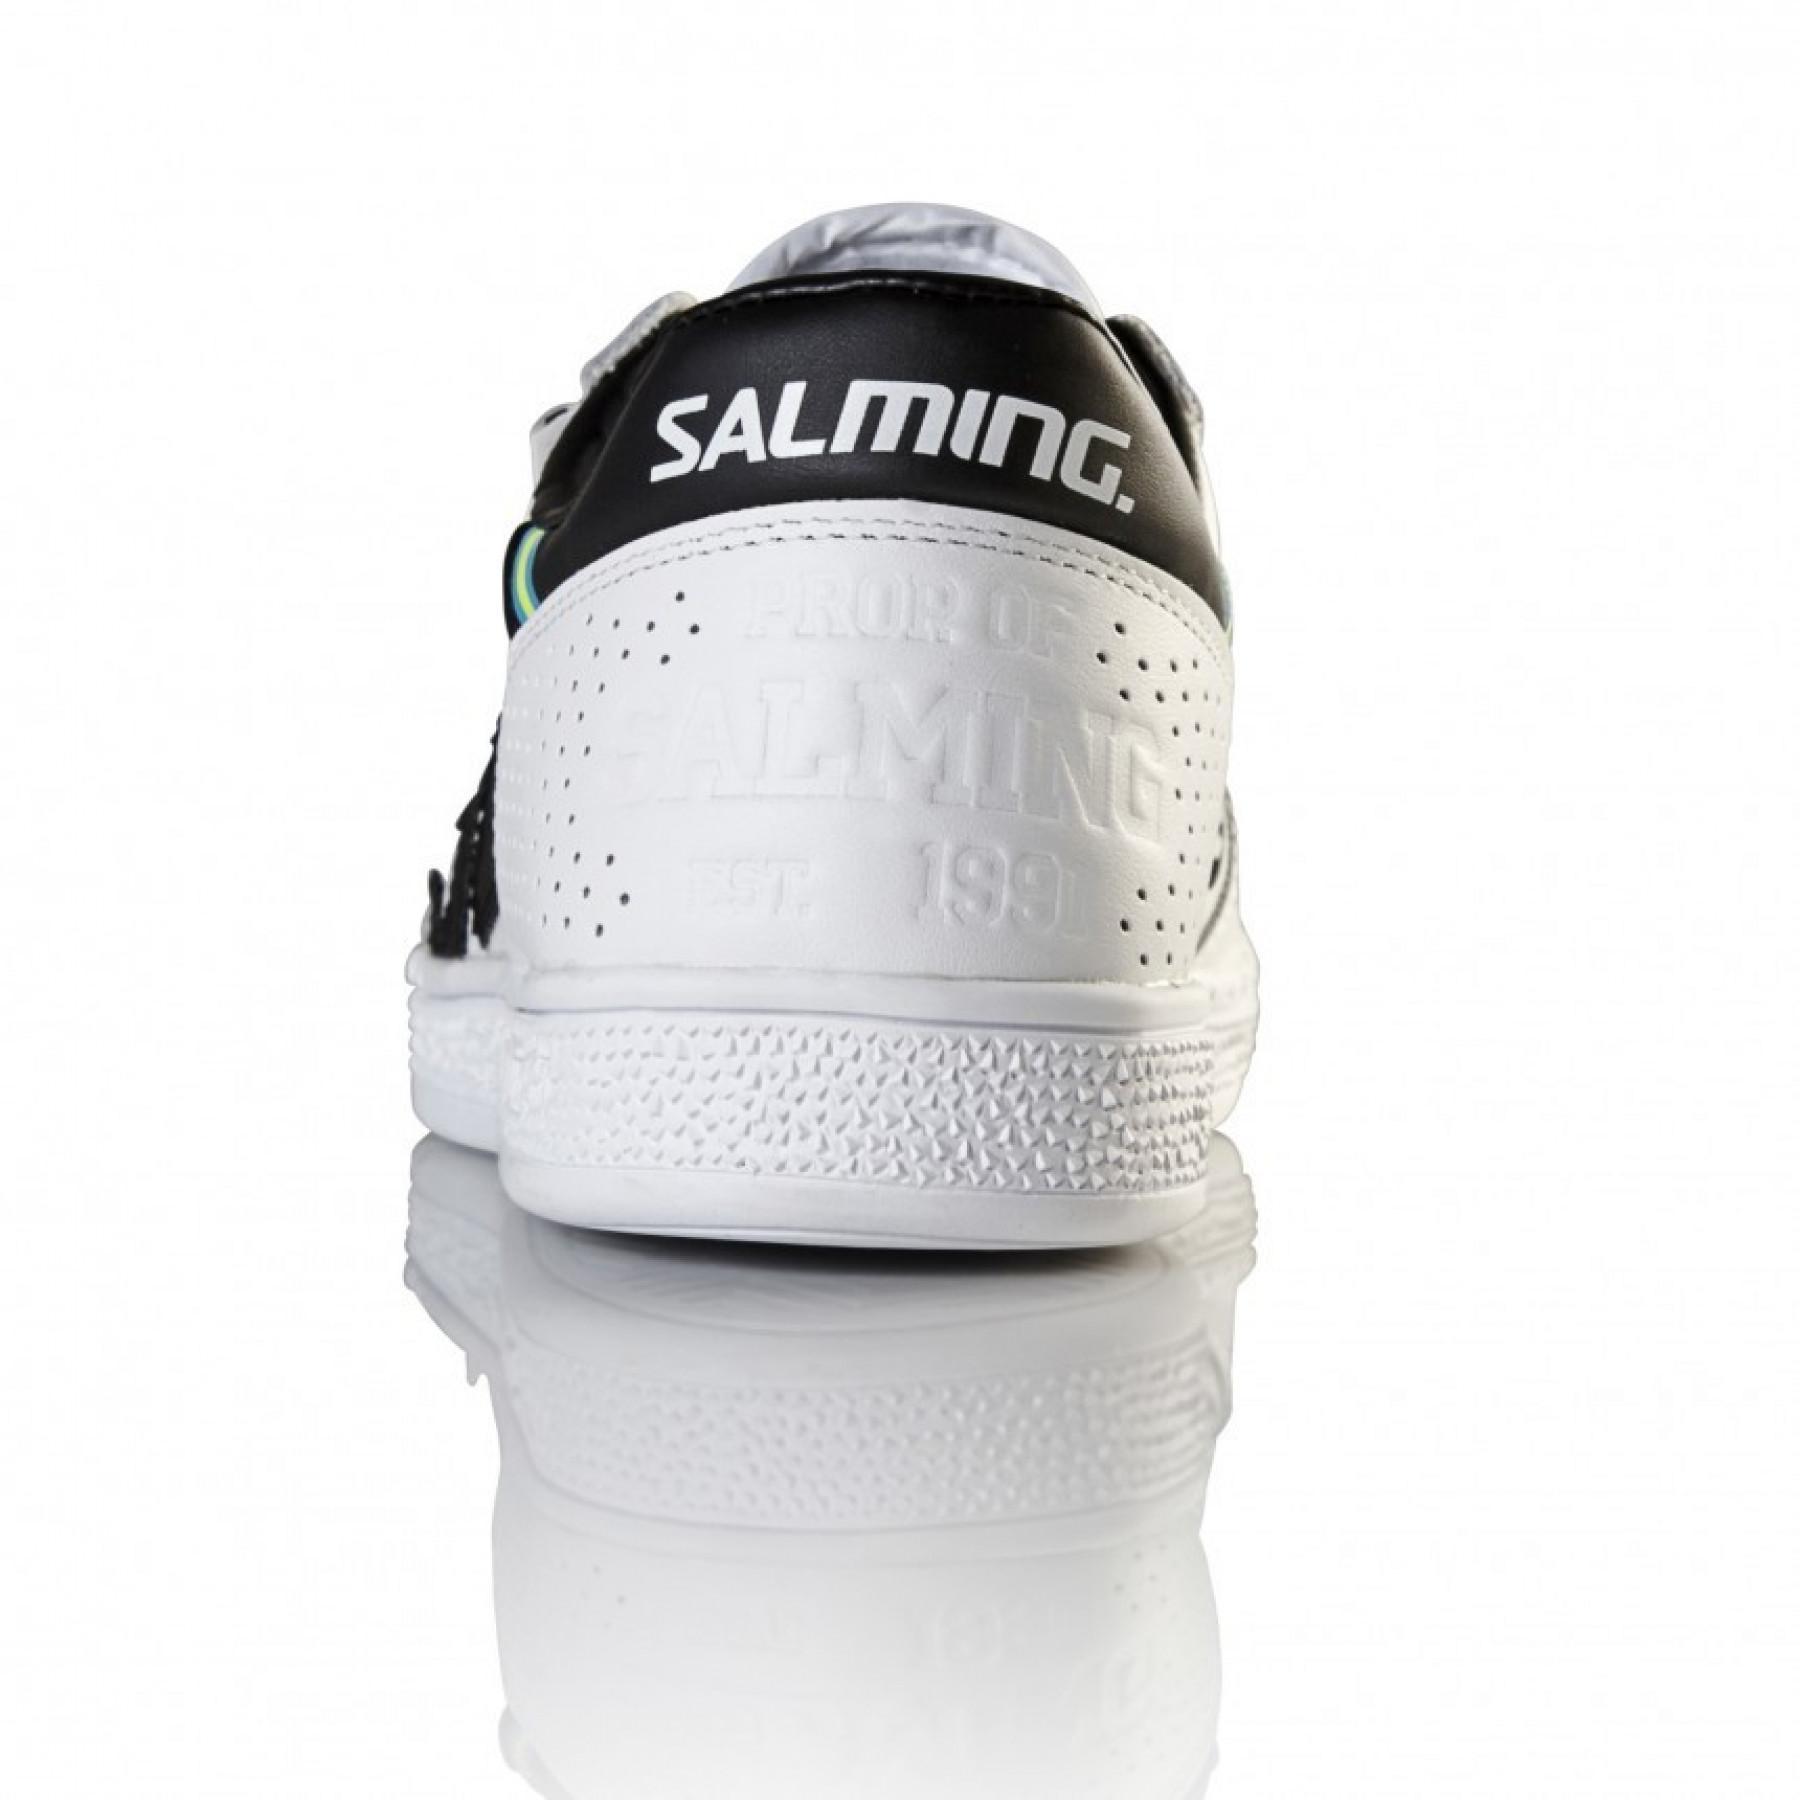 Chaussures Salming 91 Goalie Cuir Blanc